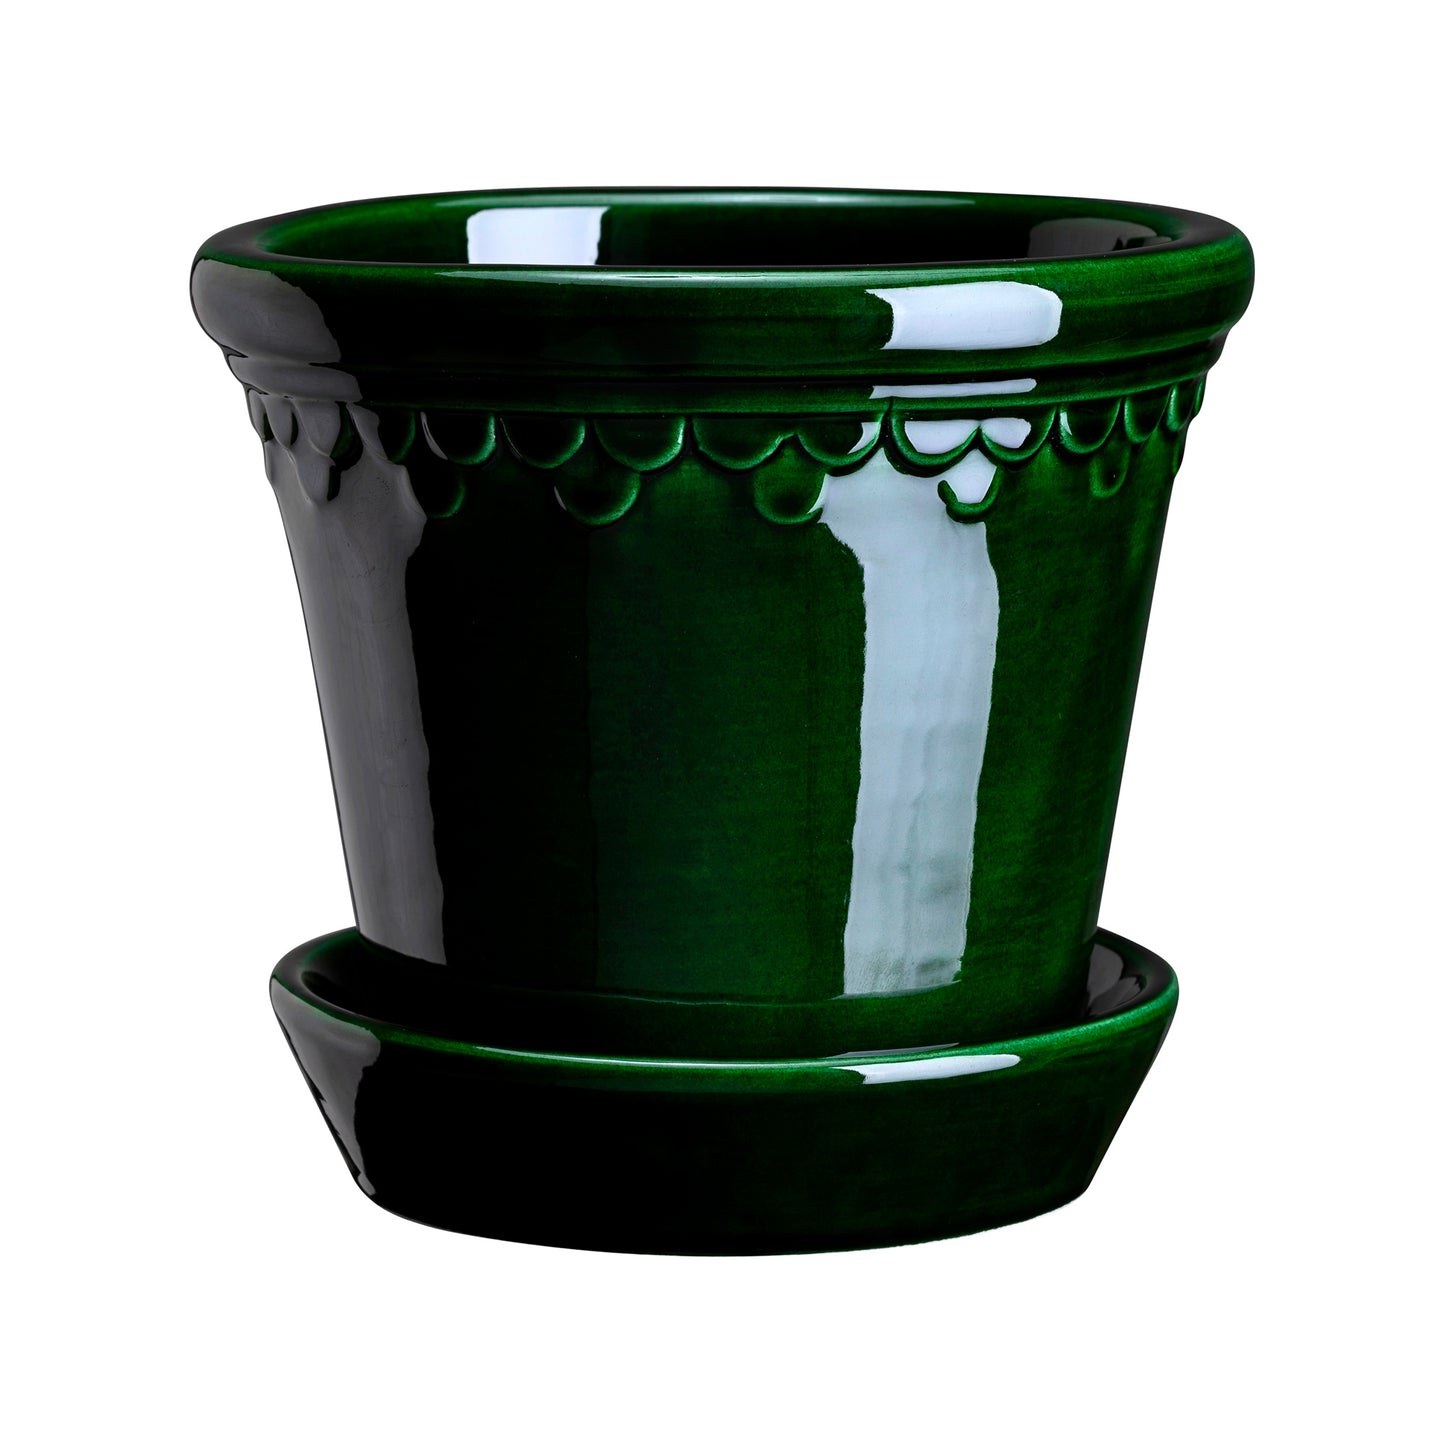 Københavner Pot with Saucer - Glazed Emerald Green